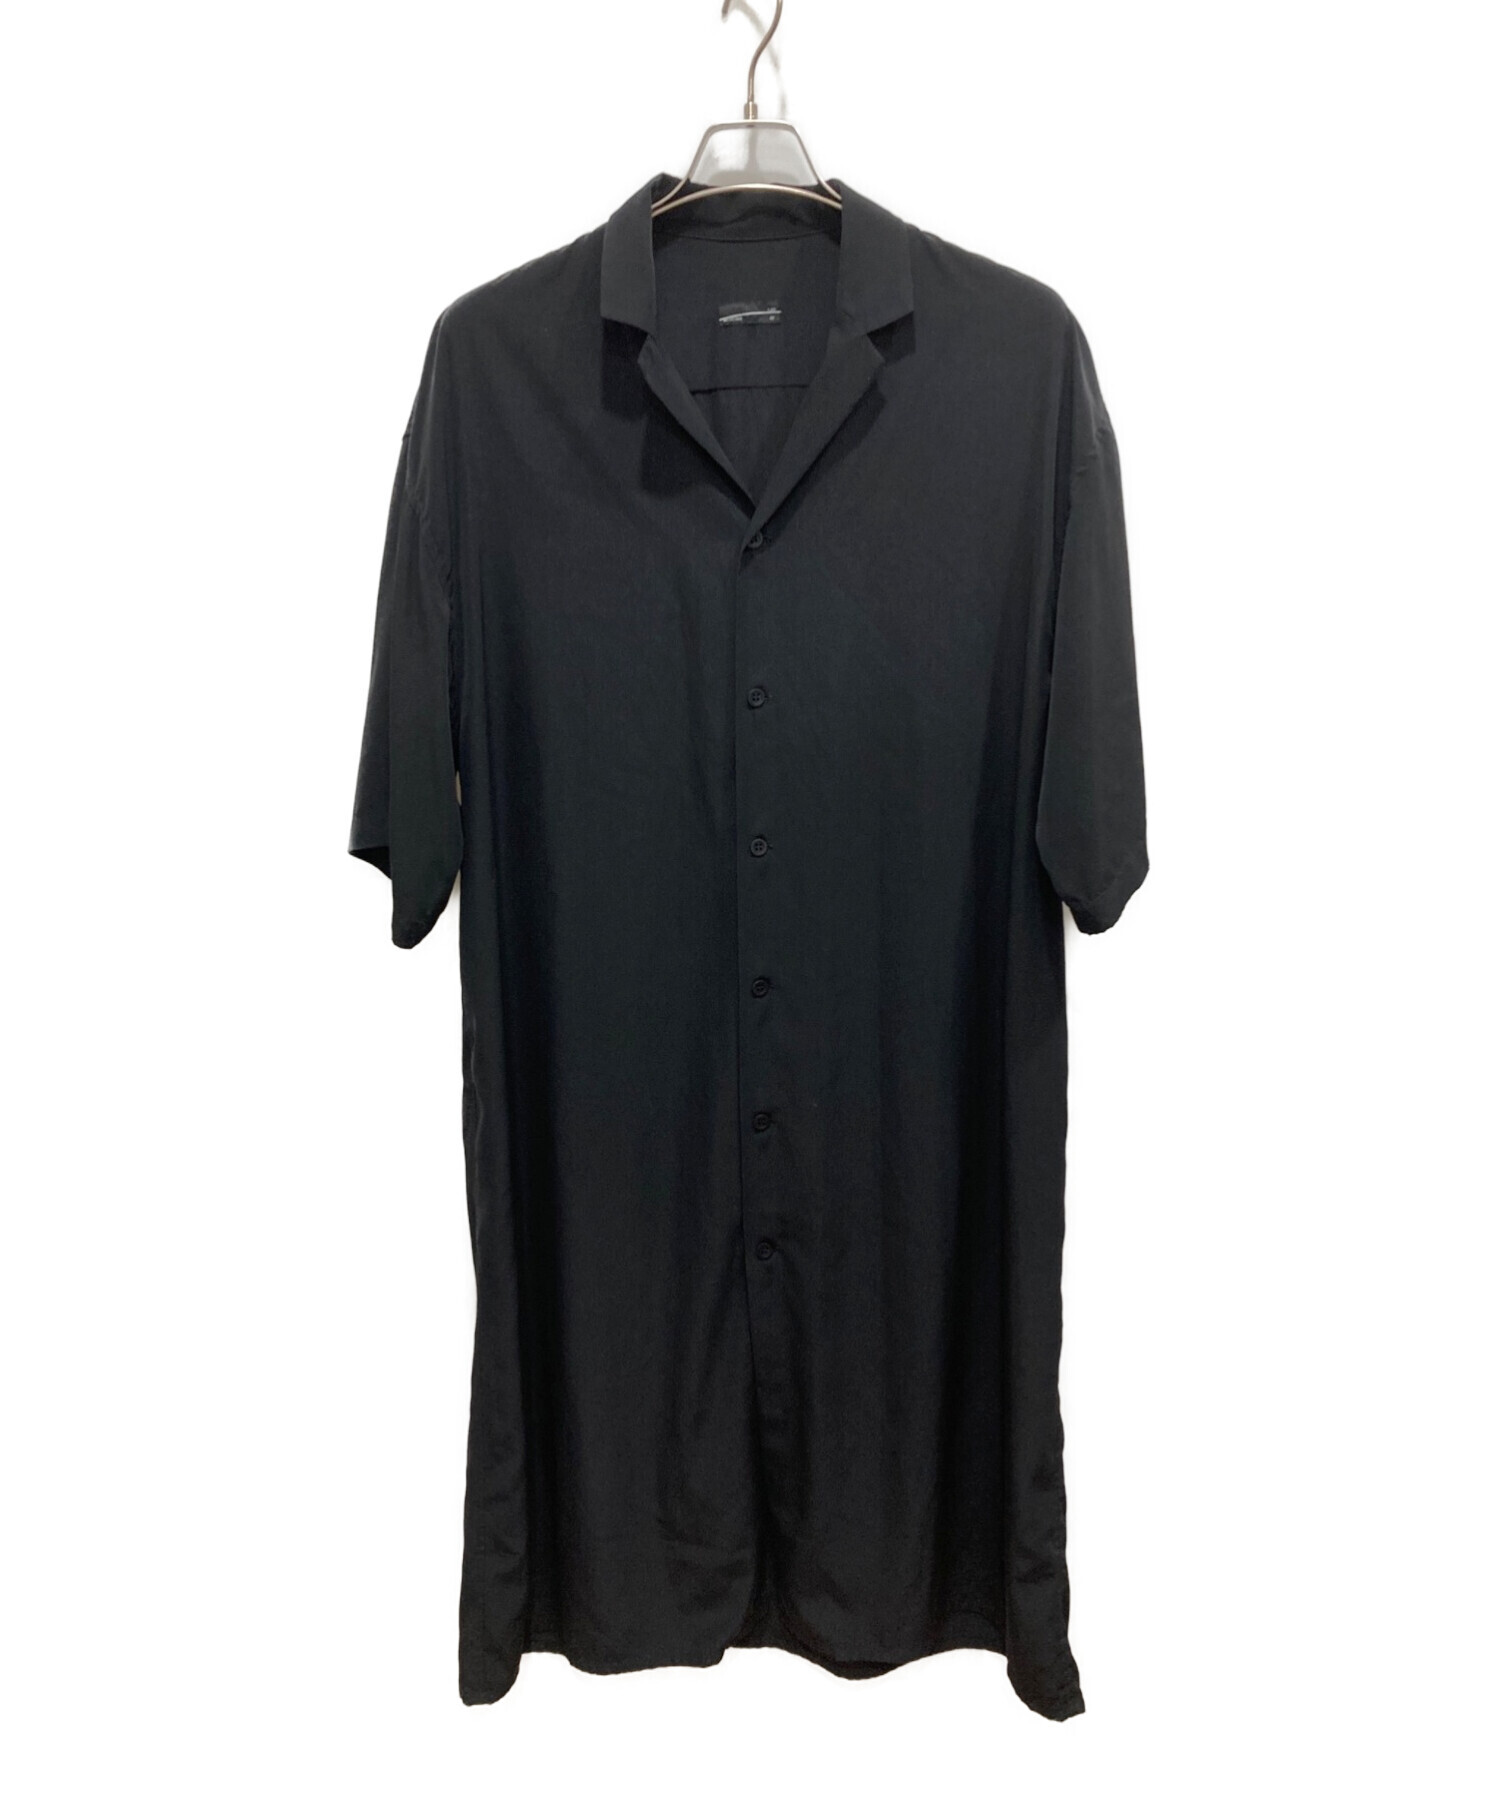 色ブラック美品 LAD MUSICIAN DECHINE LONG S/S SHIRT - Tシャツ